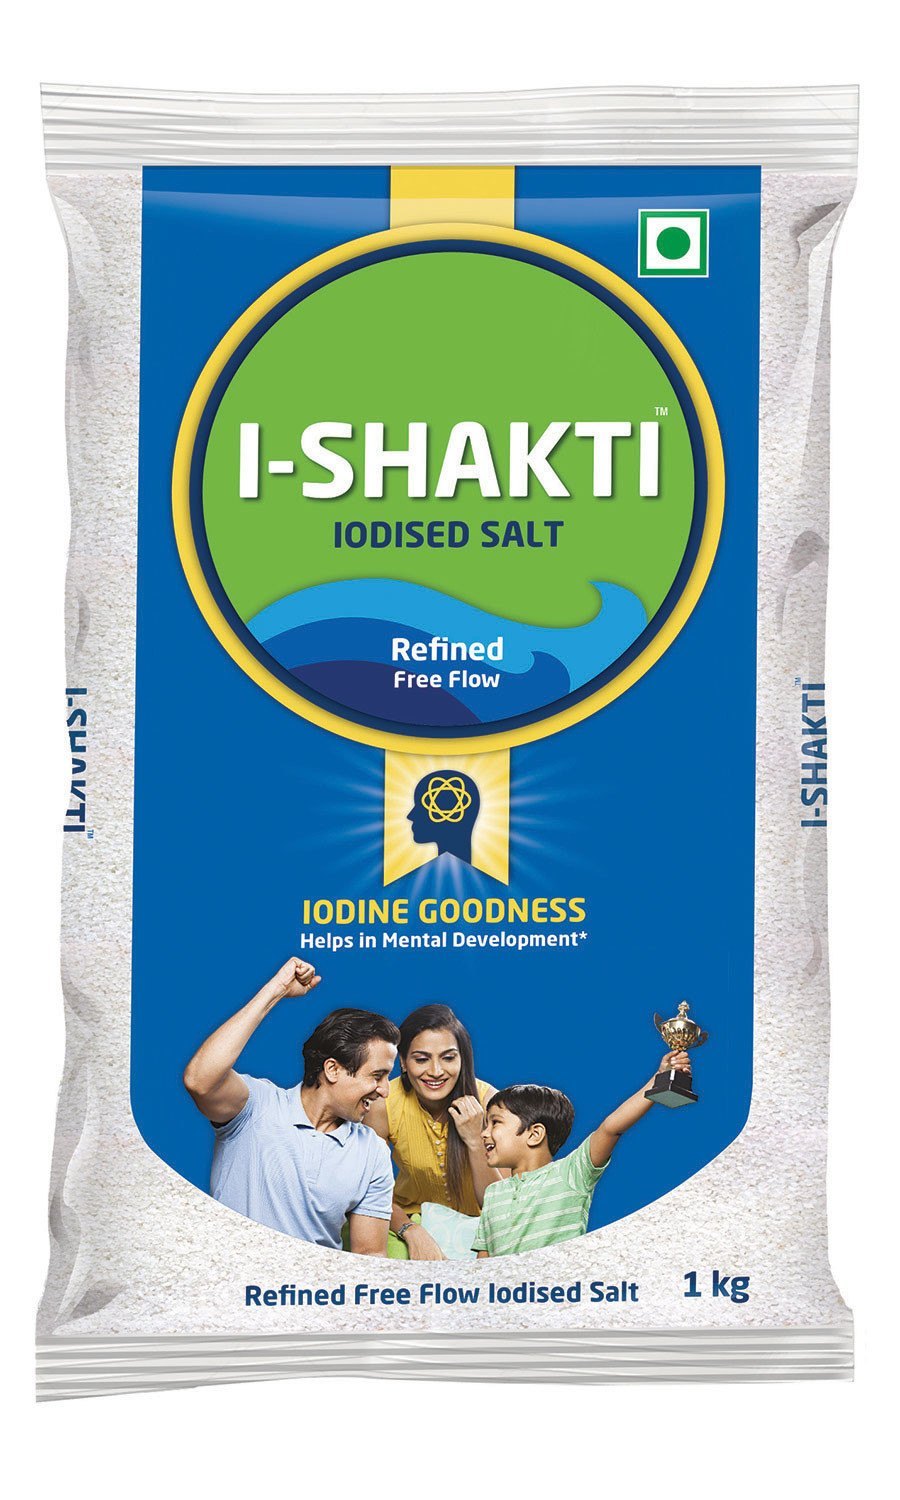 Tata I-Shakti Salt